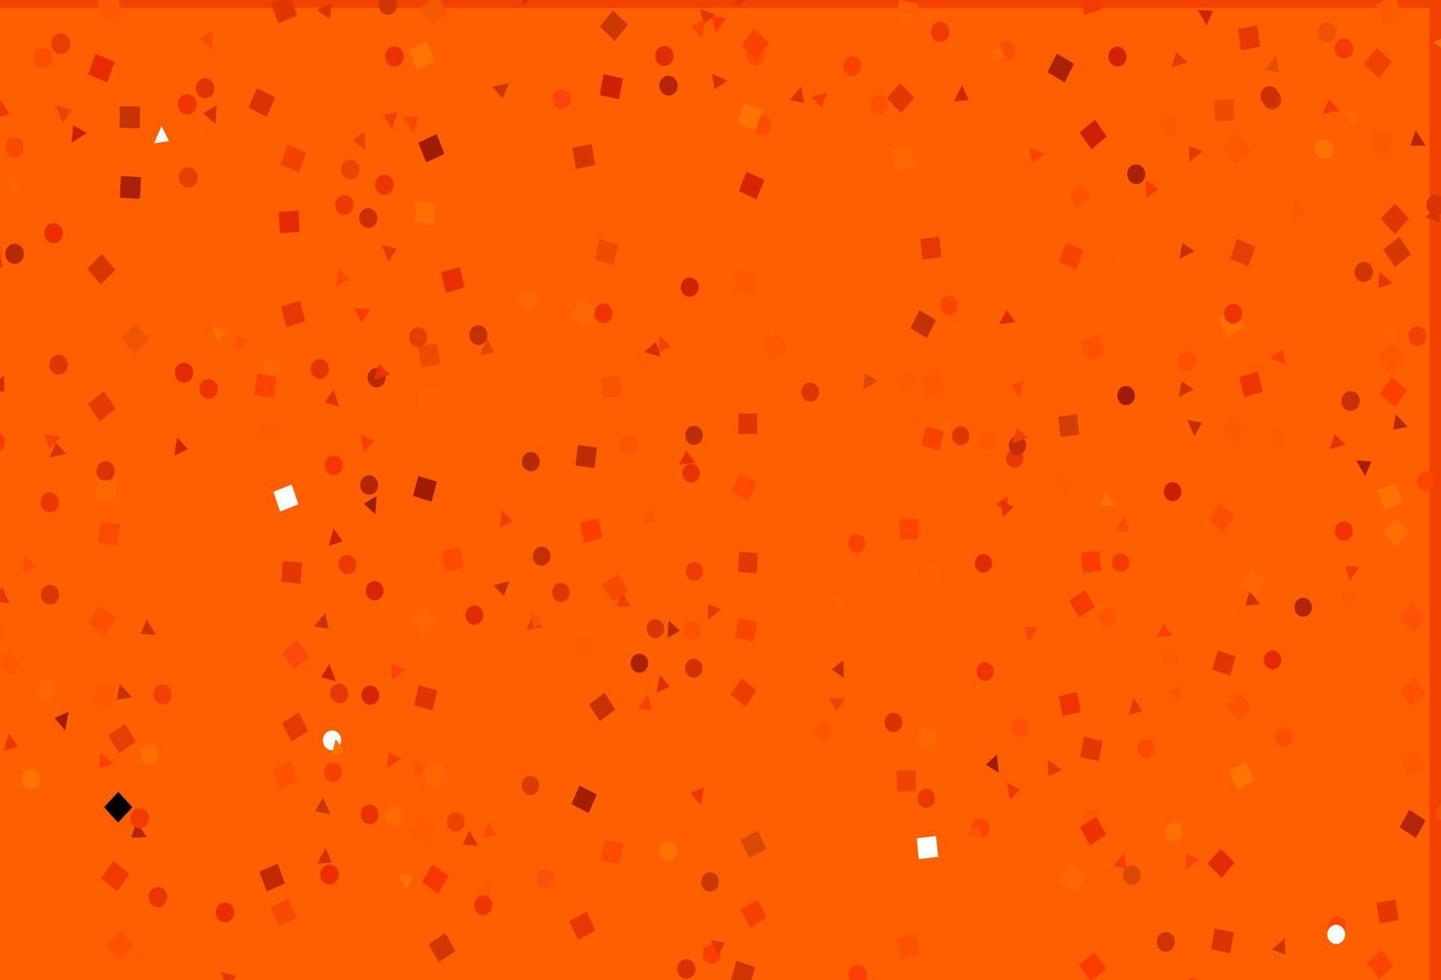 texture vecteur orange clair dans un style poly avec des cercles, des cubes.